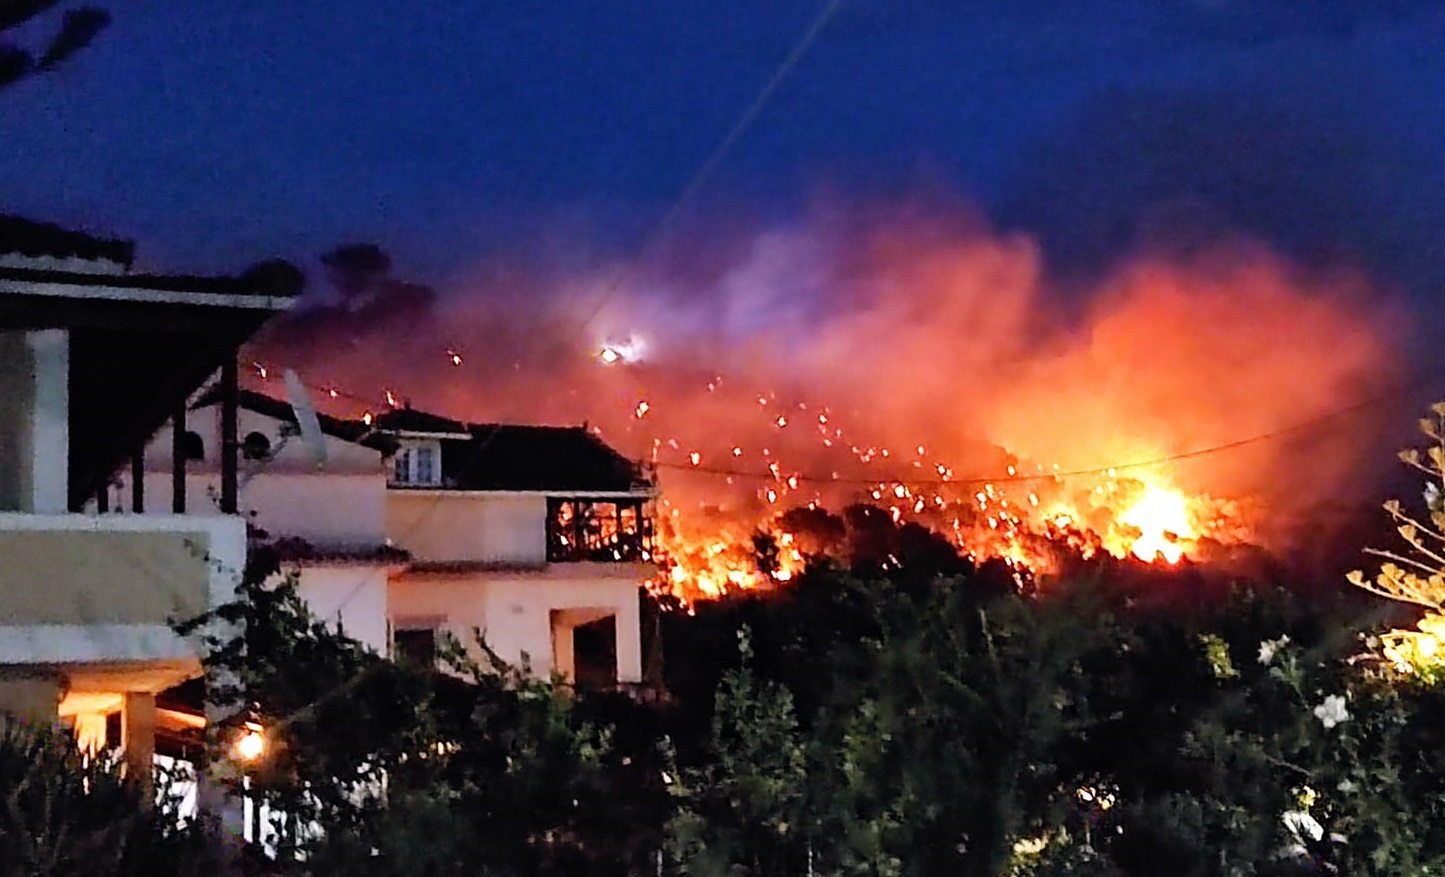 Φωτιά στη Ζάκυνθο: Κοντά σε σπίτια καίει η φωτιά – Σε ετοιμότητα καλούν οι Αρχές μέσω του 112